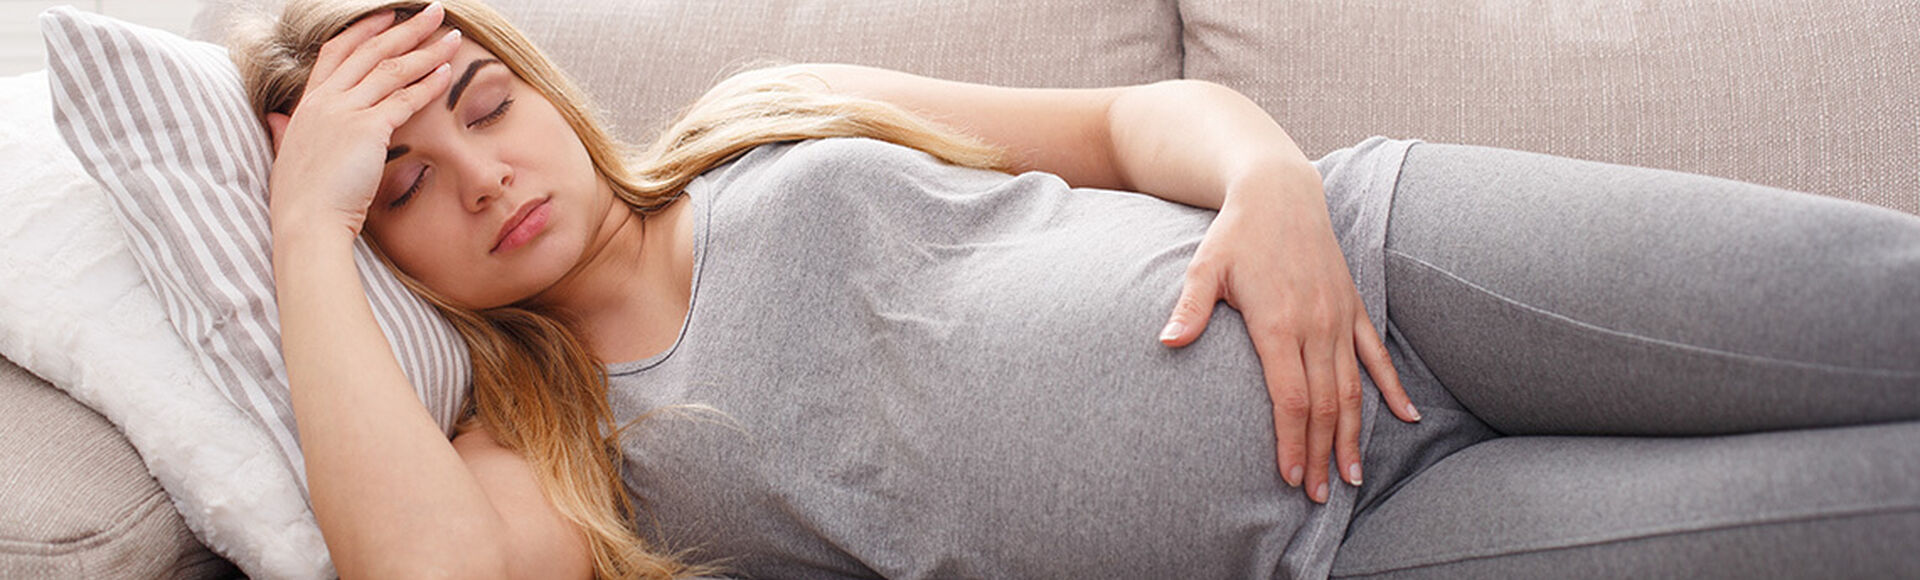 Os movimentos são mais frequentes na 28ª semana de gravidez